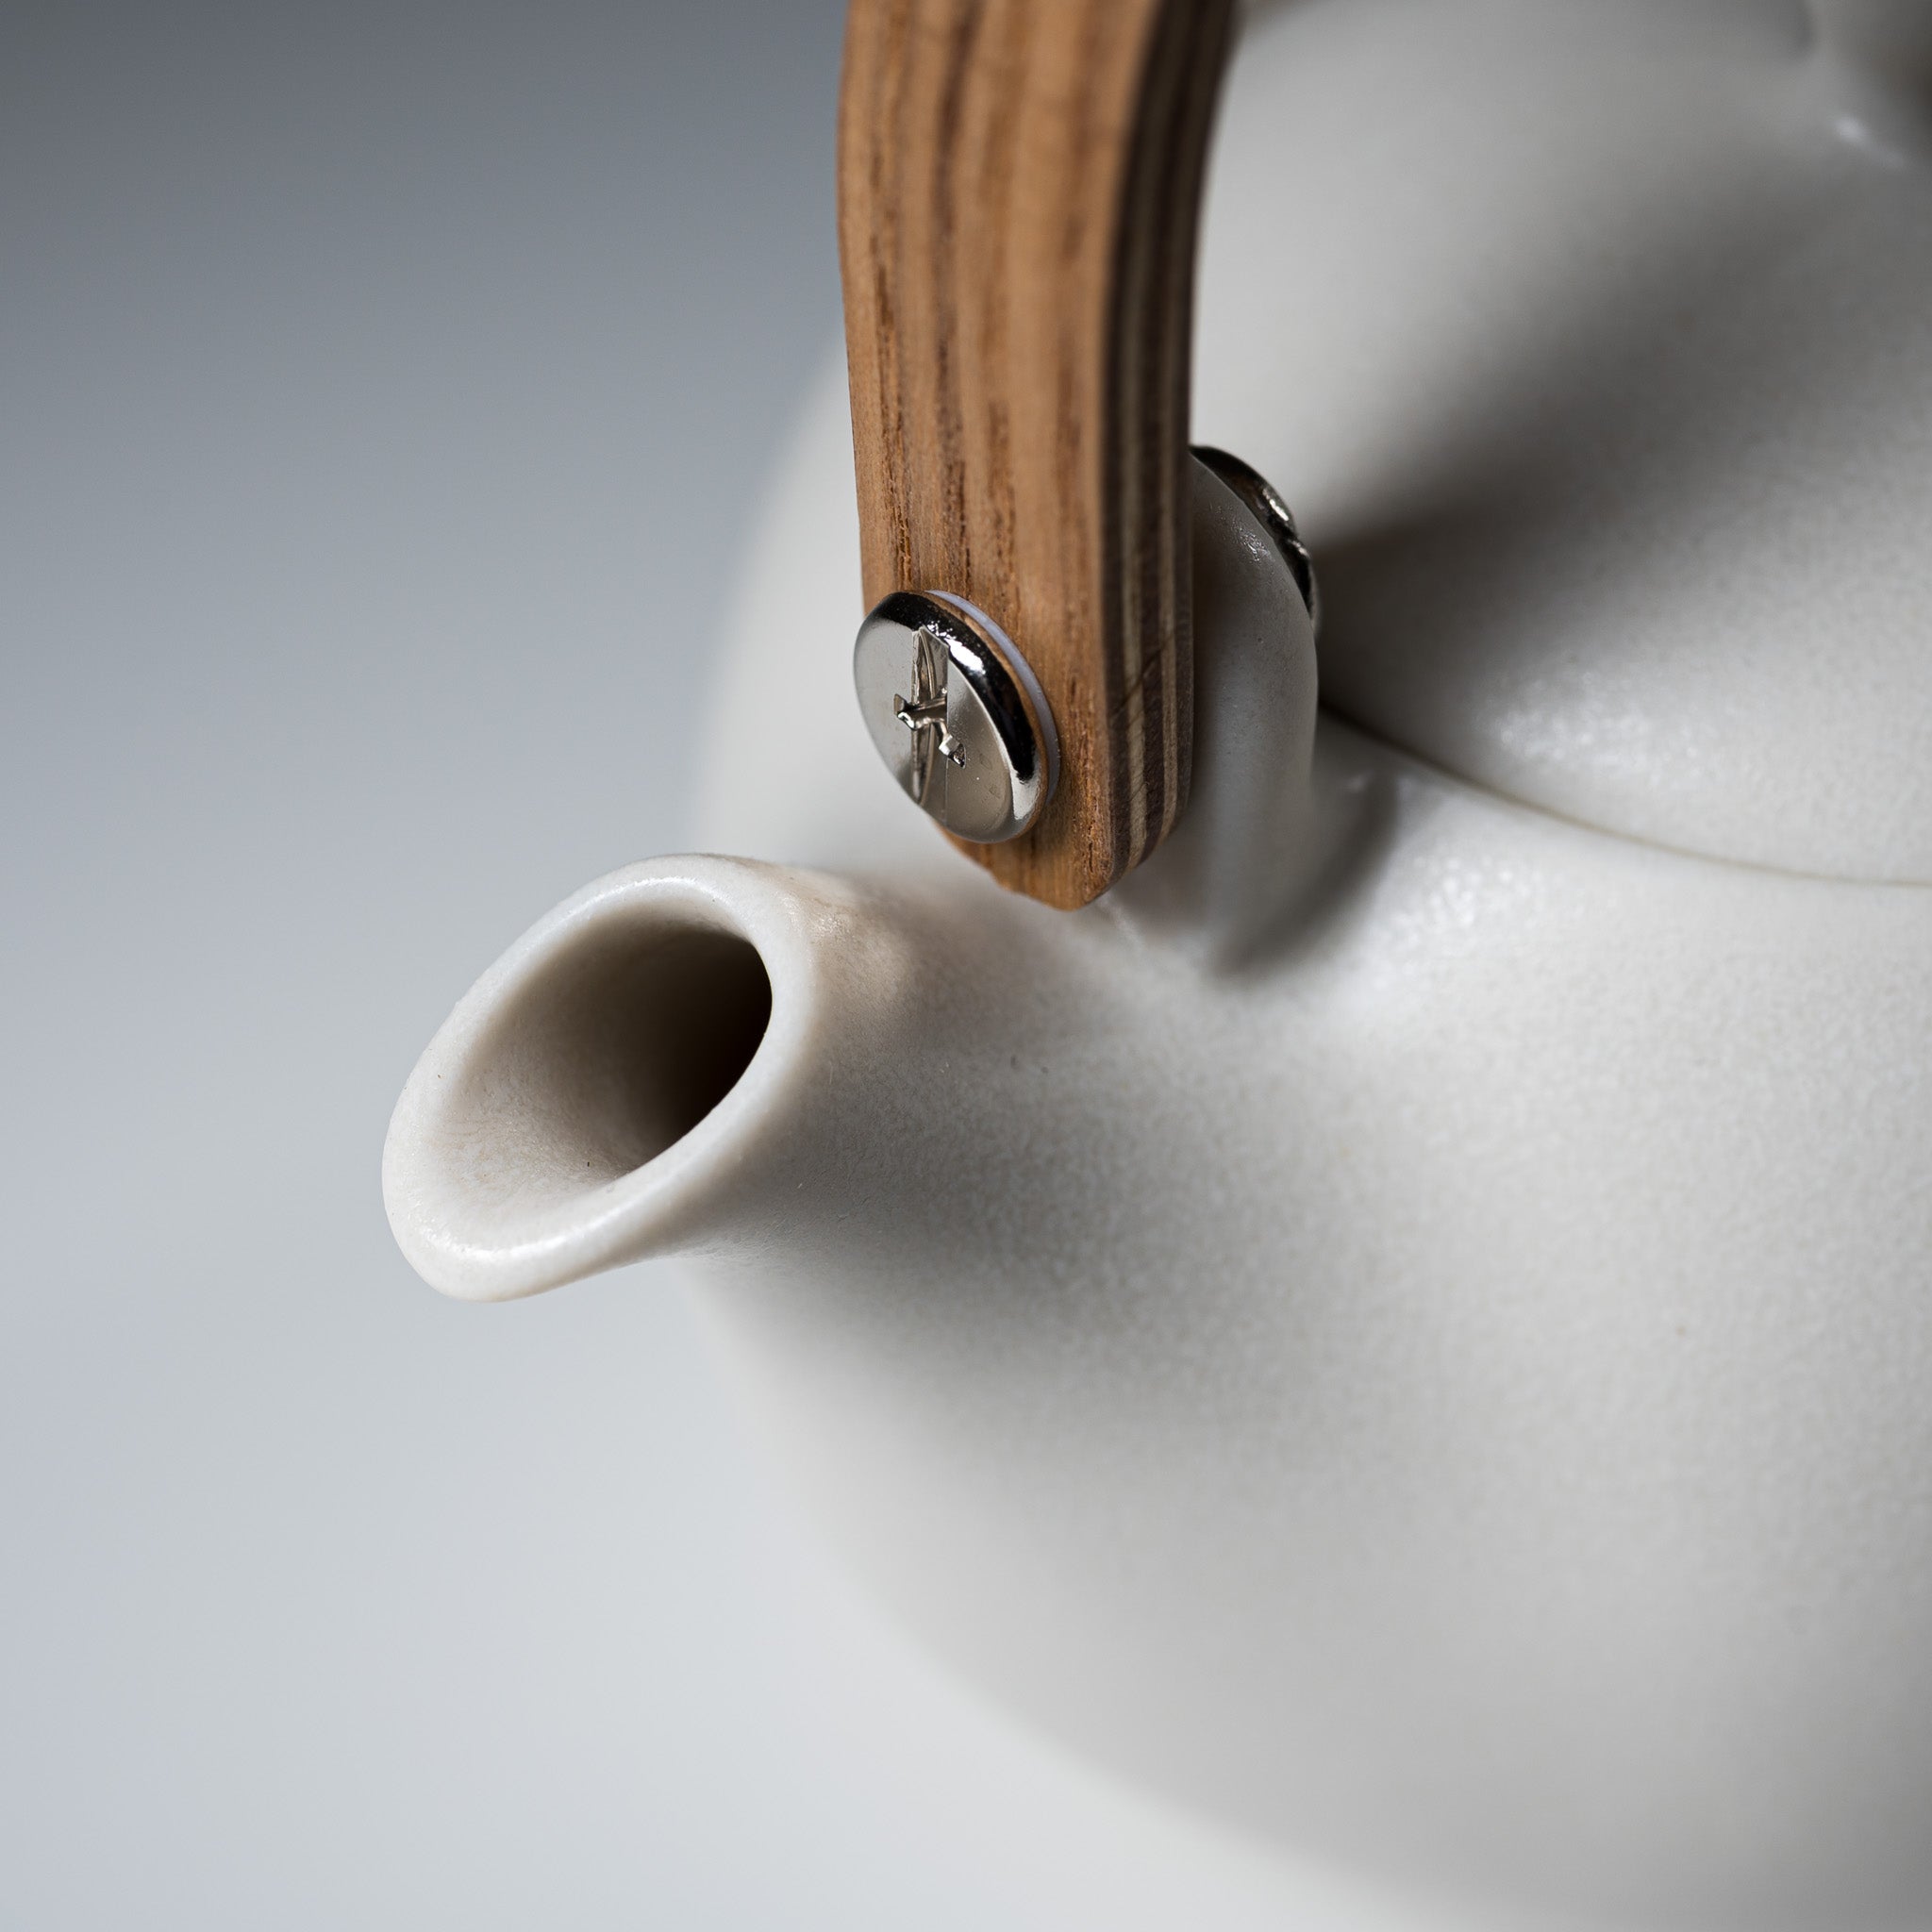 Yui Wooden Handle Teapot 330ml - White